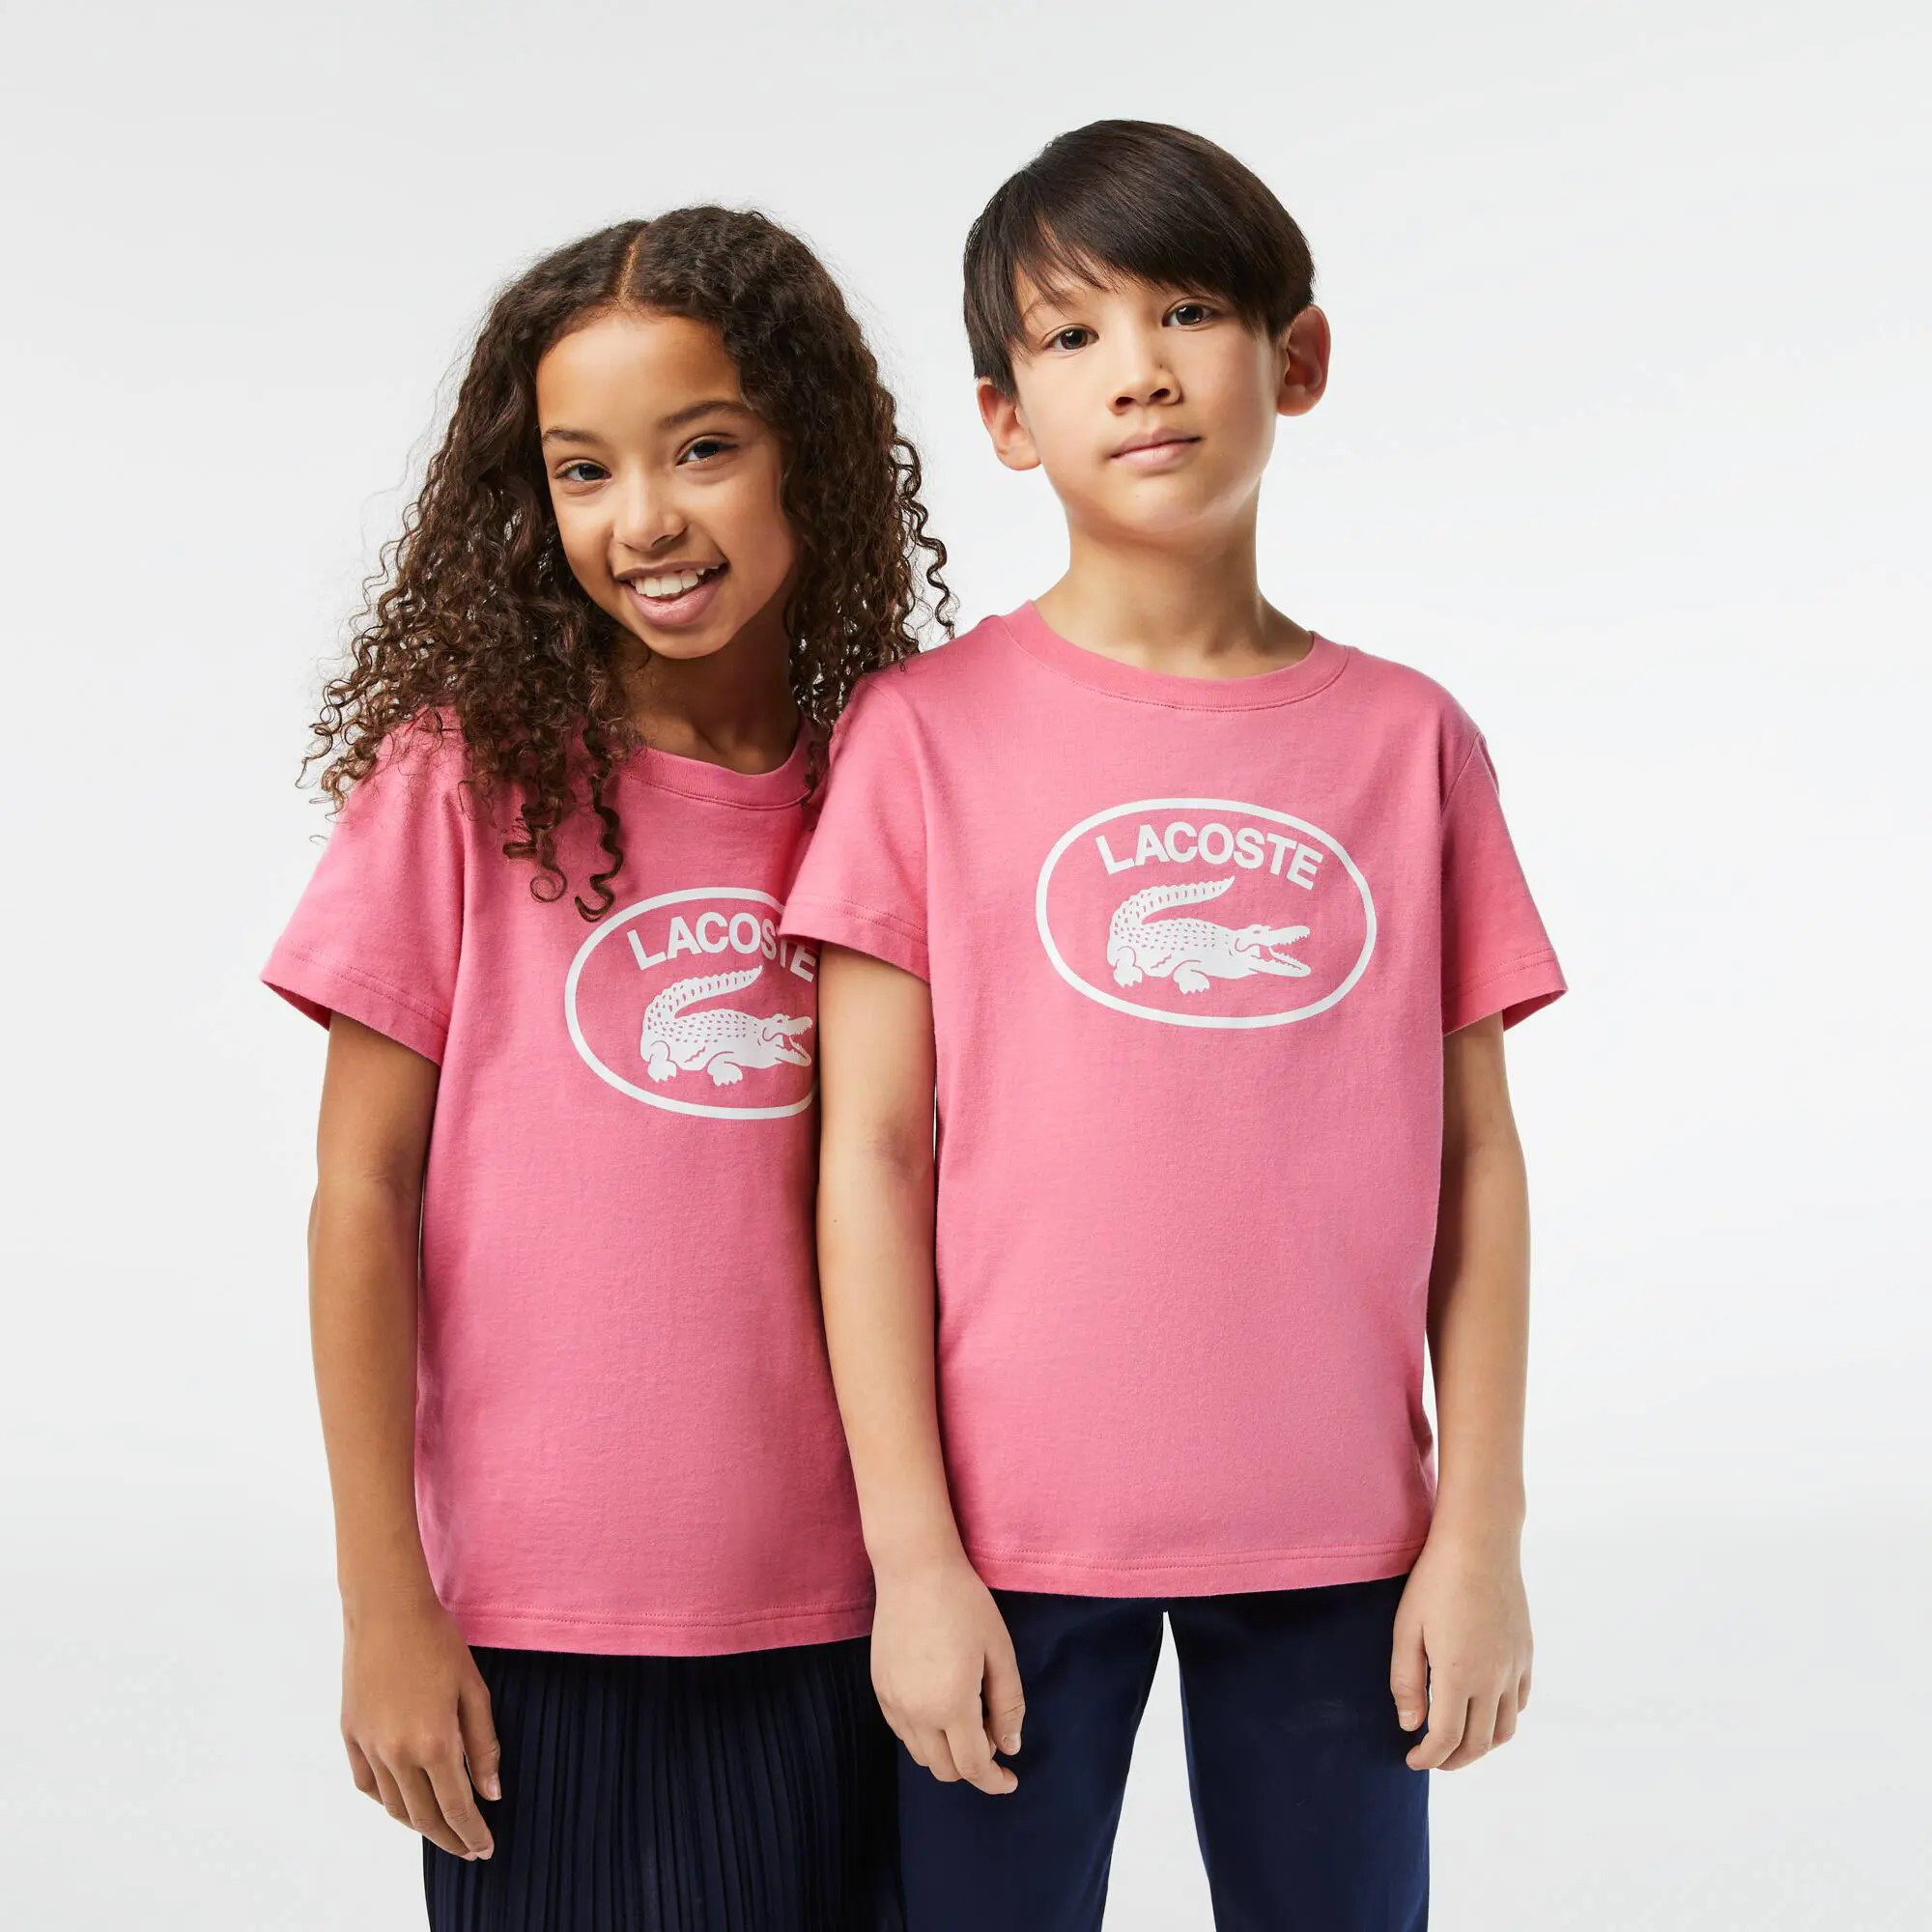 Lacoste Camiseta de niño Lacoste en tejido de punto de algodón con detalles de la marca a contraste. 1